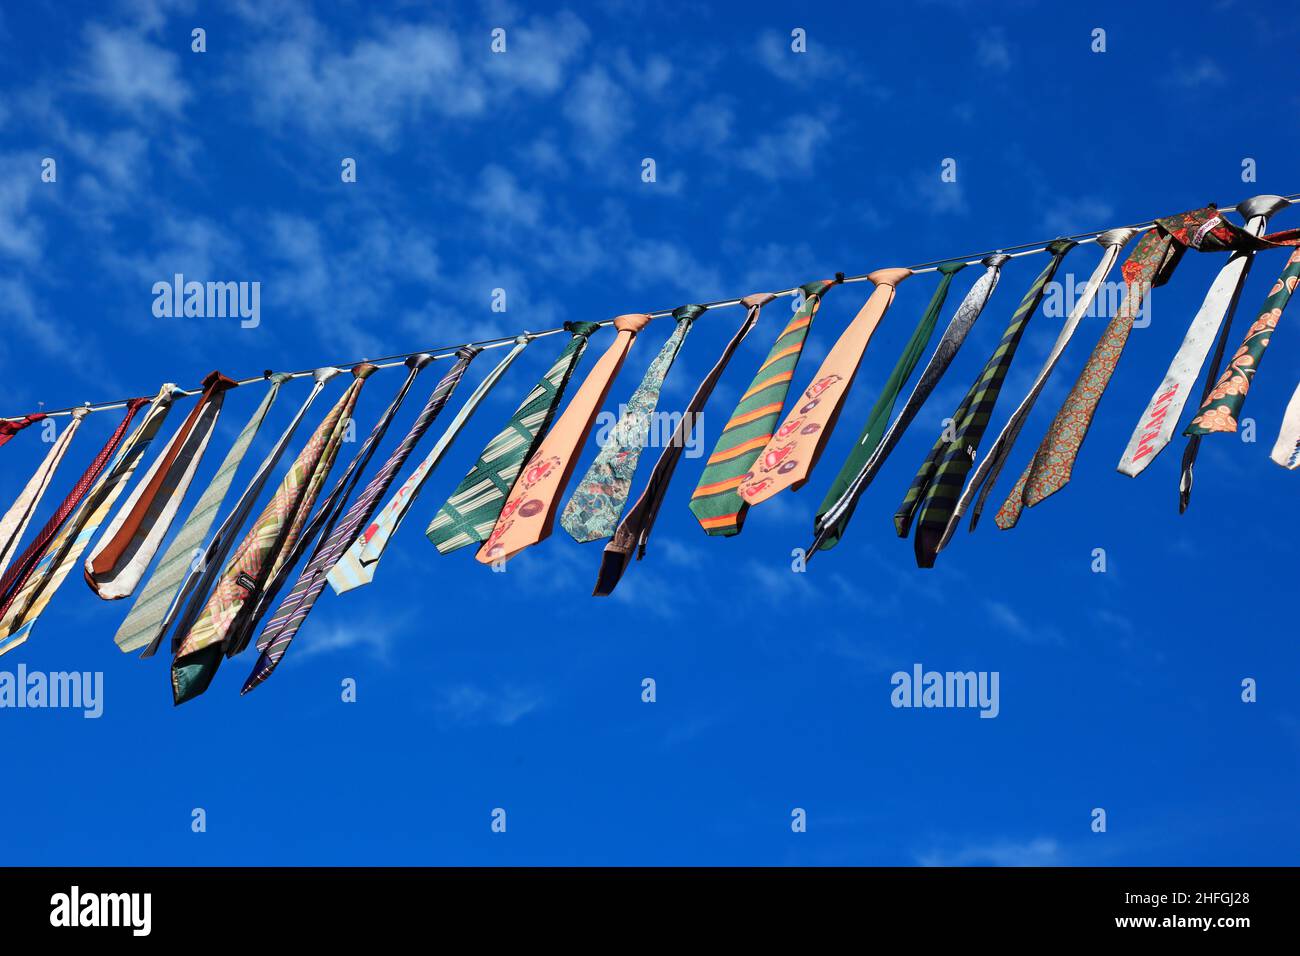 Viele bunte Krawatten hängen an einer Wäscheleine, blauer Himmel  /  Many colorful ties hanging on a clothesline, blue sky Stock Photo